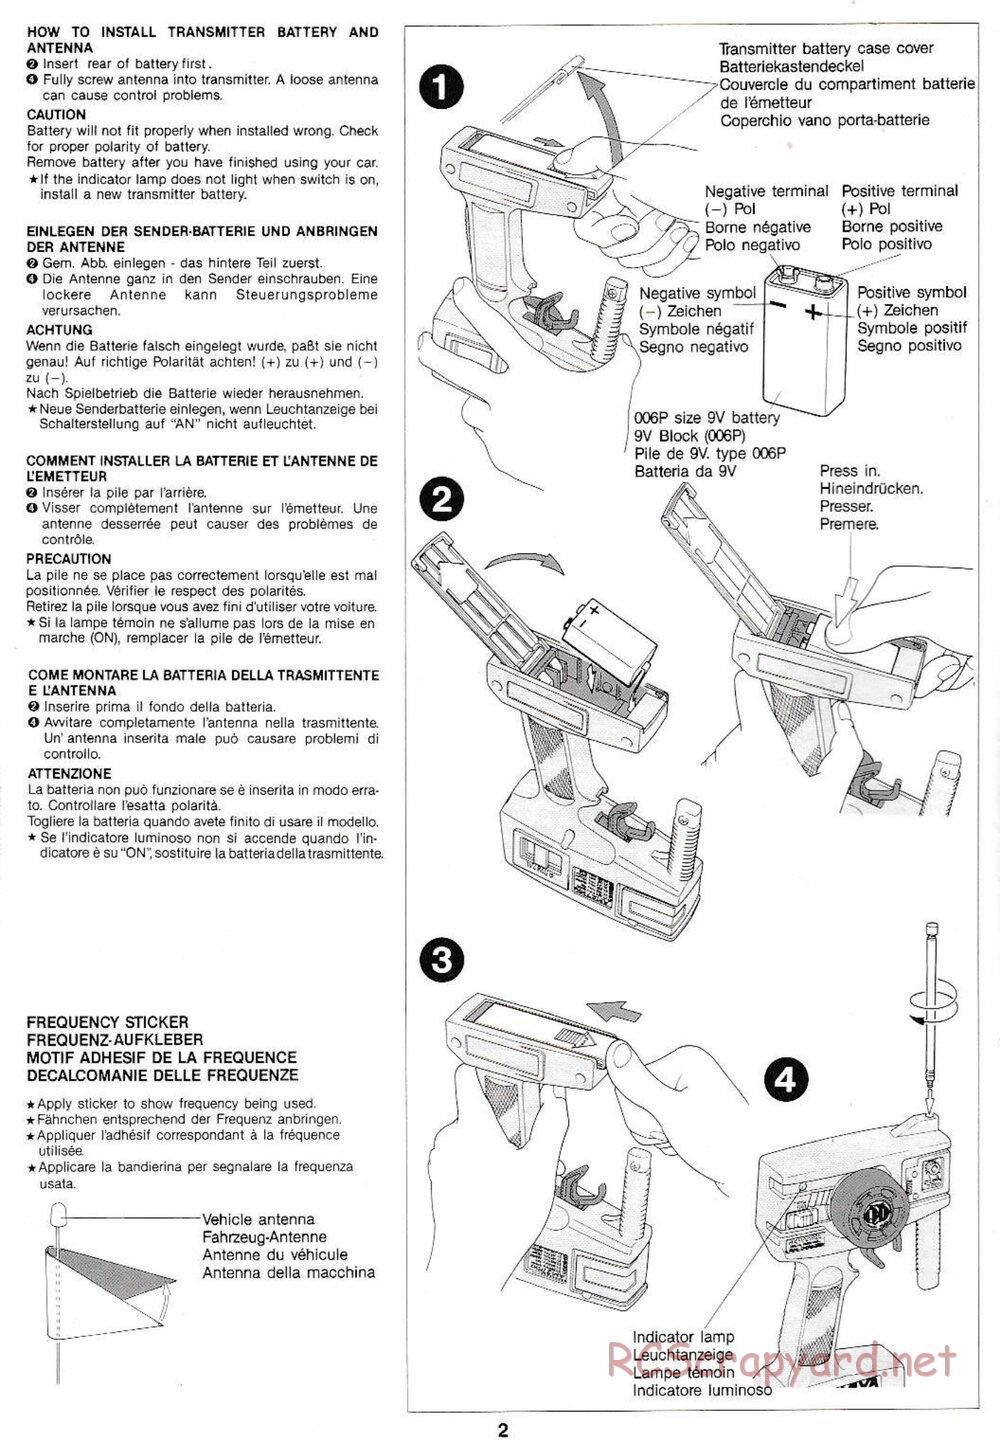 Tamiya - Manta Ray QD Chassis - Manual - Page 2